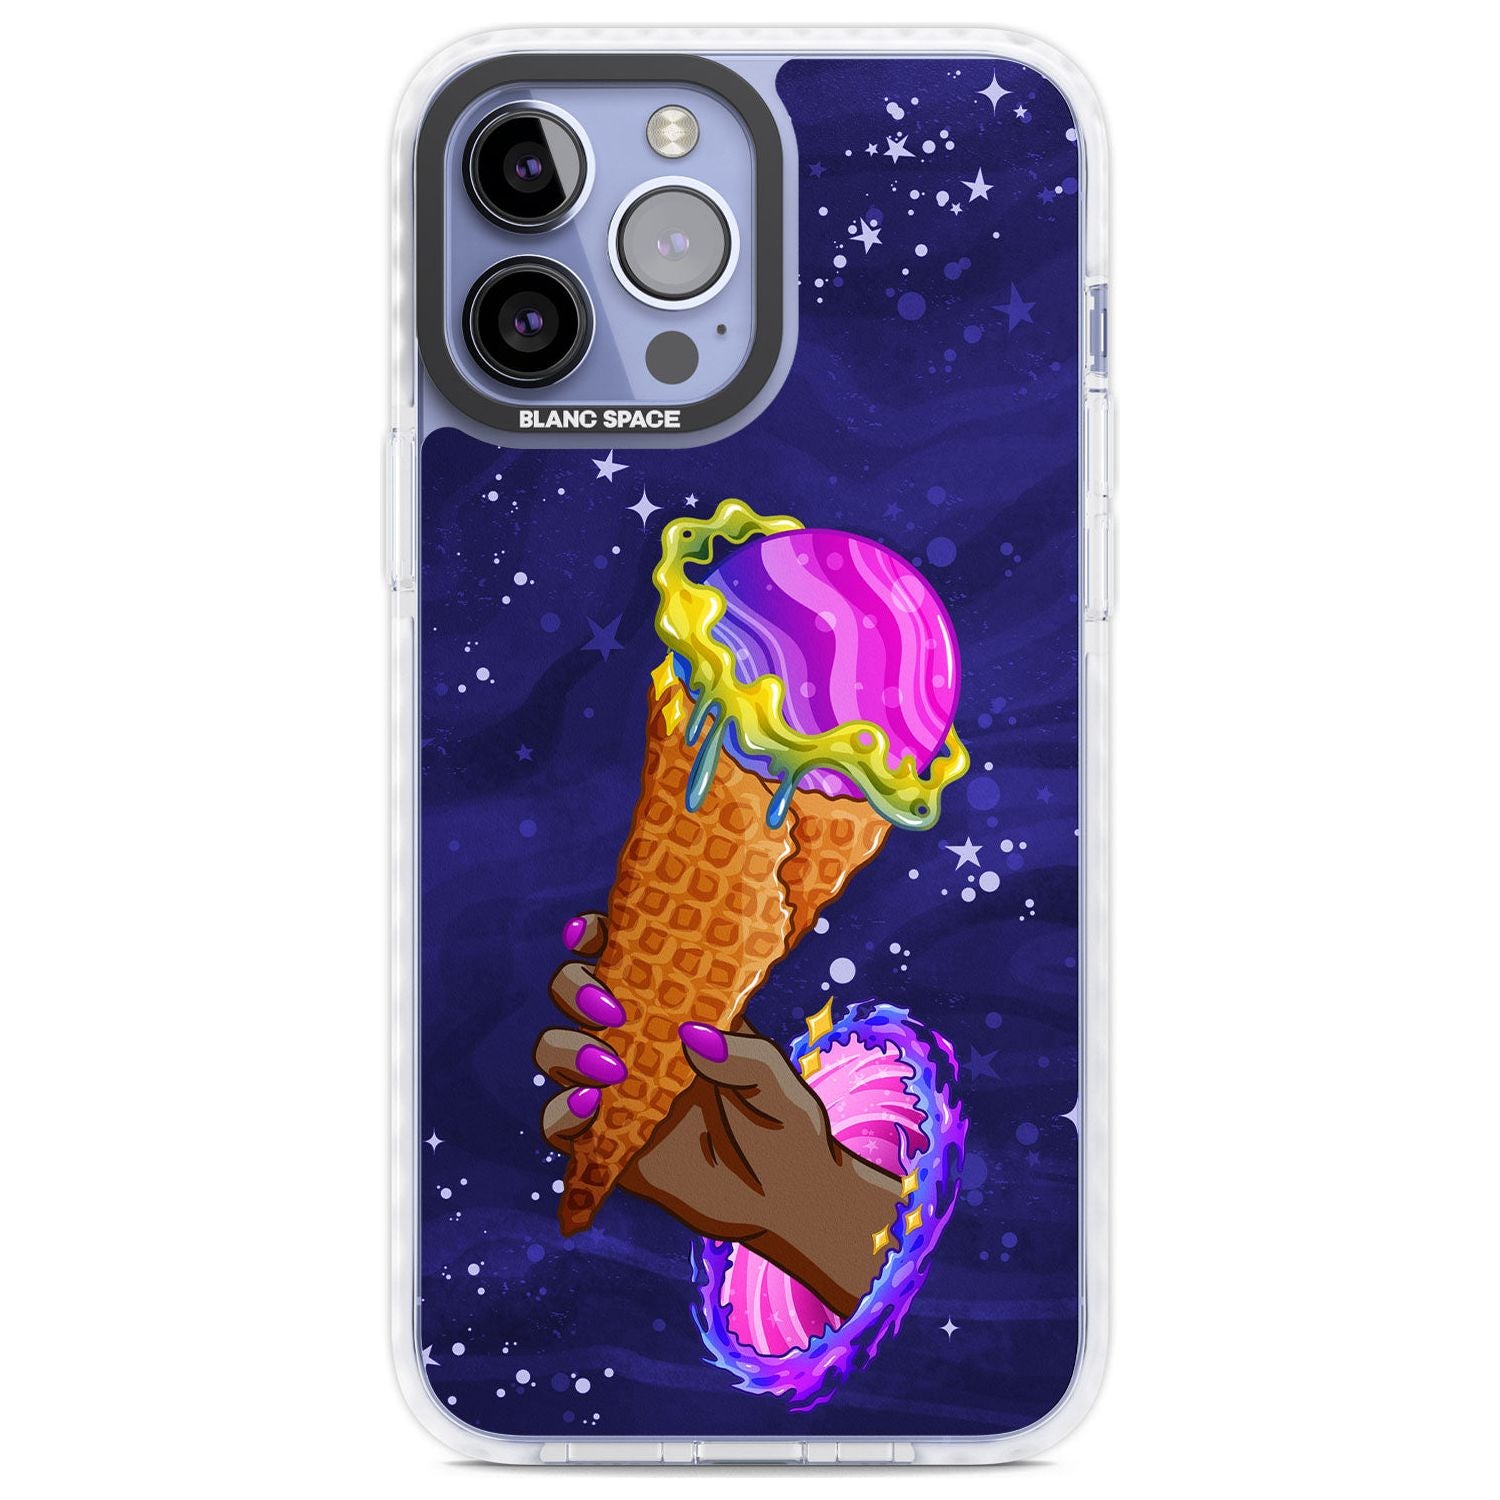 Interdimensional Ice Cream Phone Case iPhone 13 Pro Max / Impact Case,iPhone 14 Pro Max / Impact Case Blanc Space